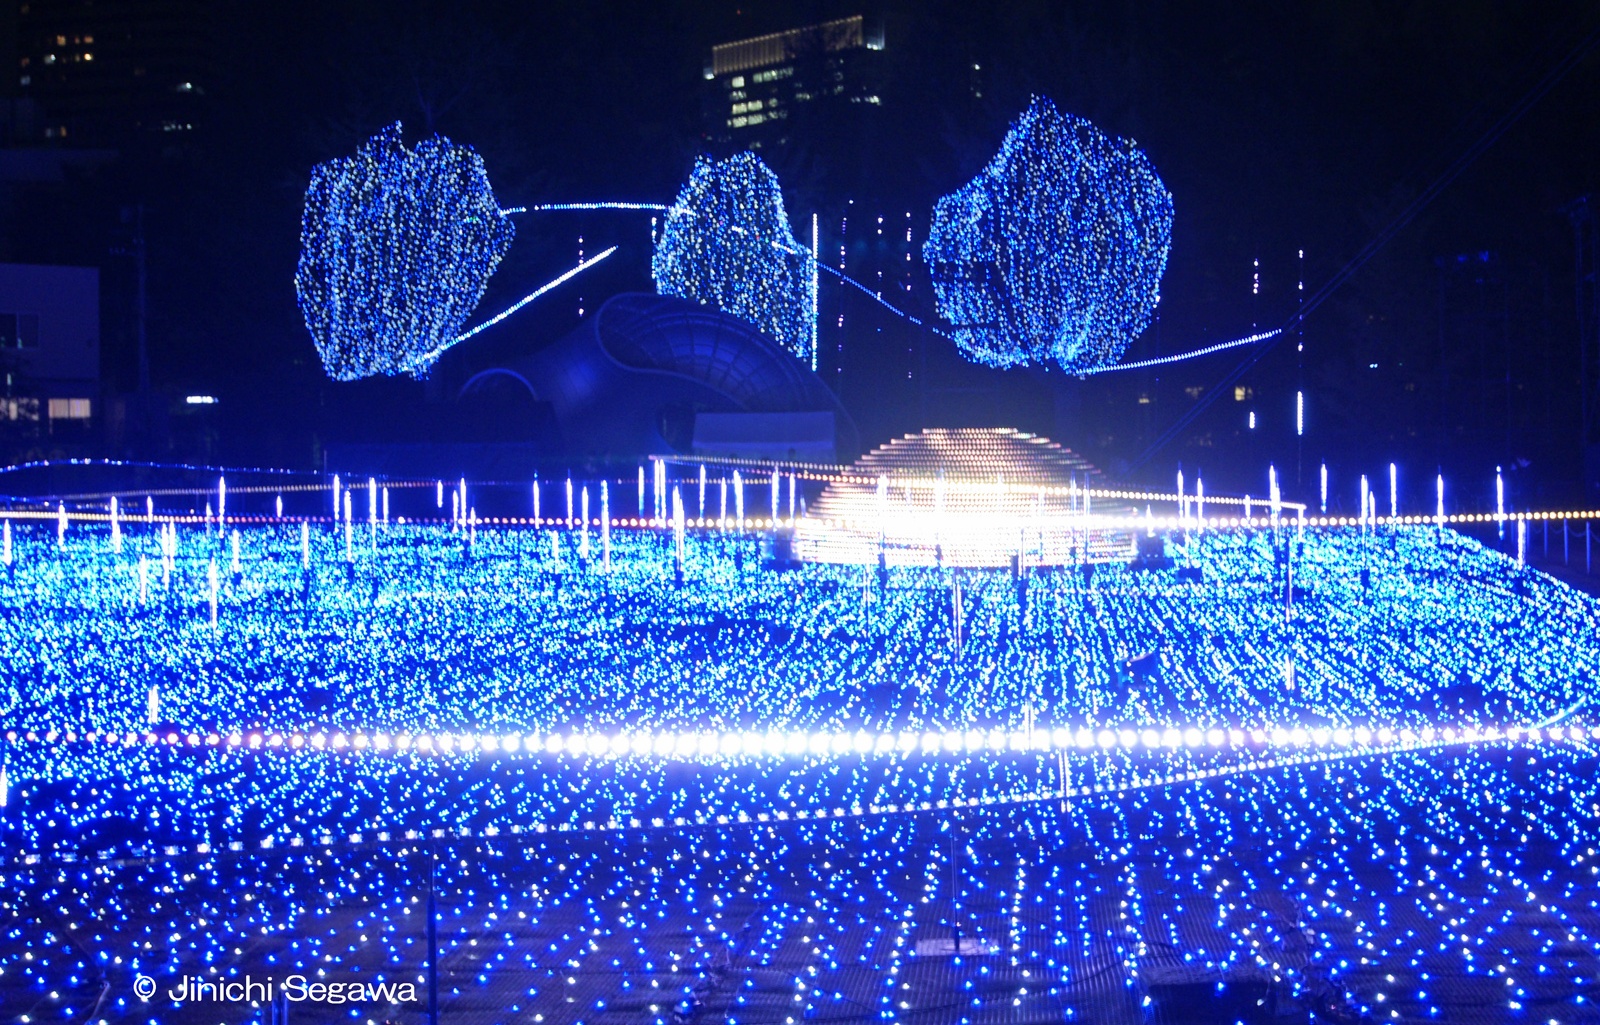 Tokyo Midtown Starlight Garden 2016